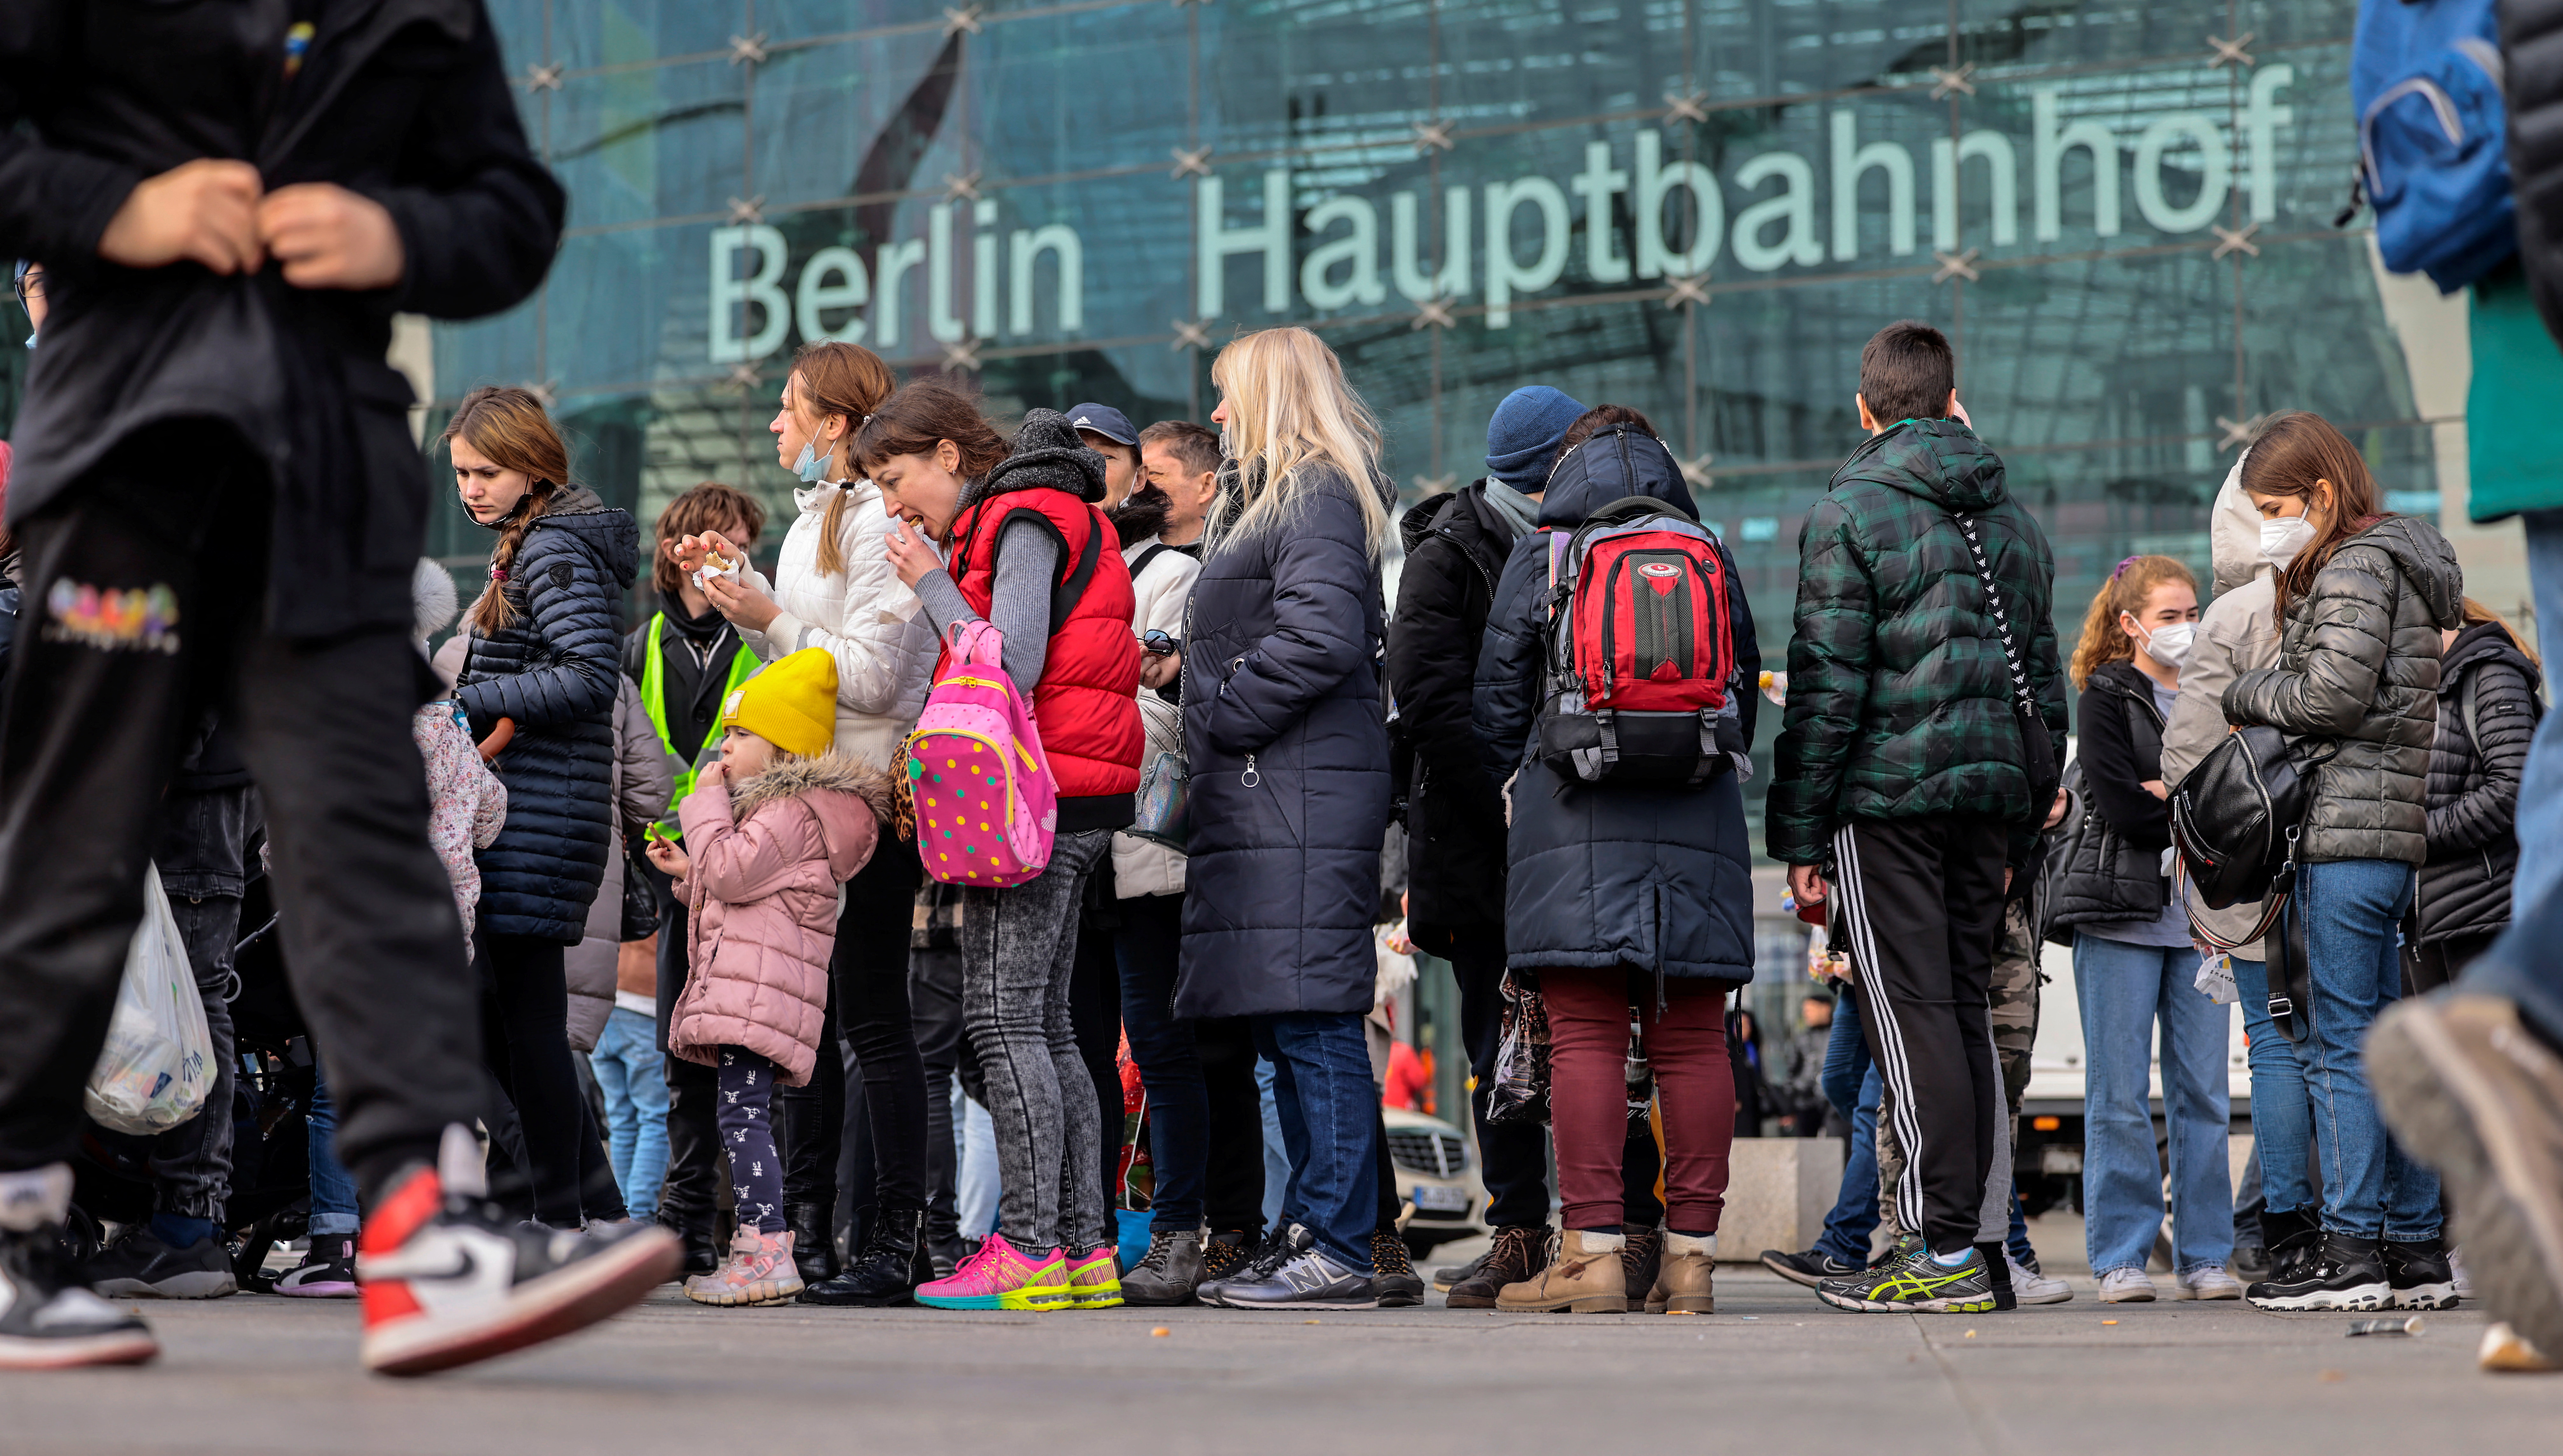 Ukrainian refugees arrive in Berlin